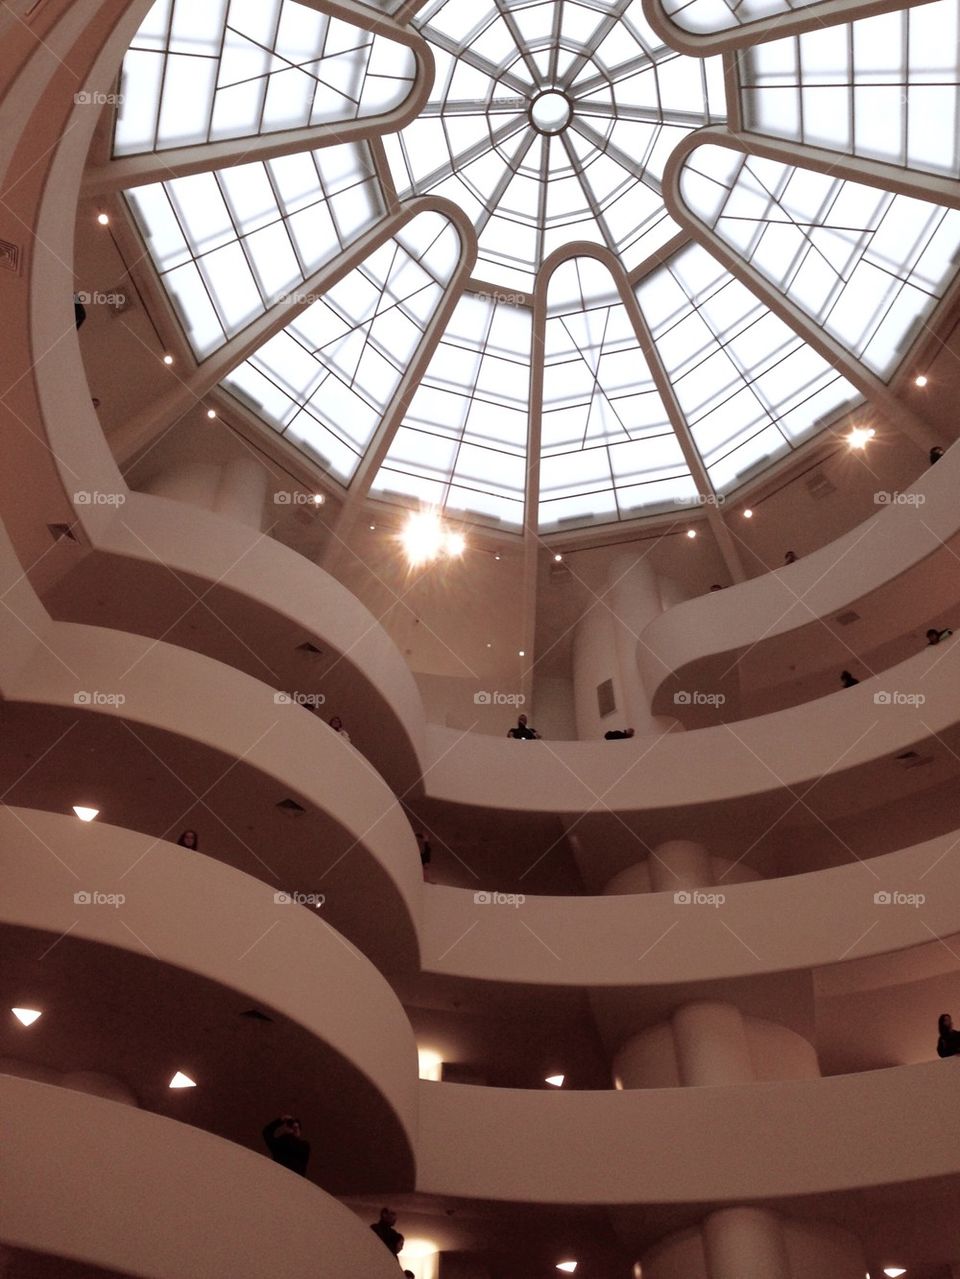 The Guggenheim - New York 